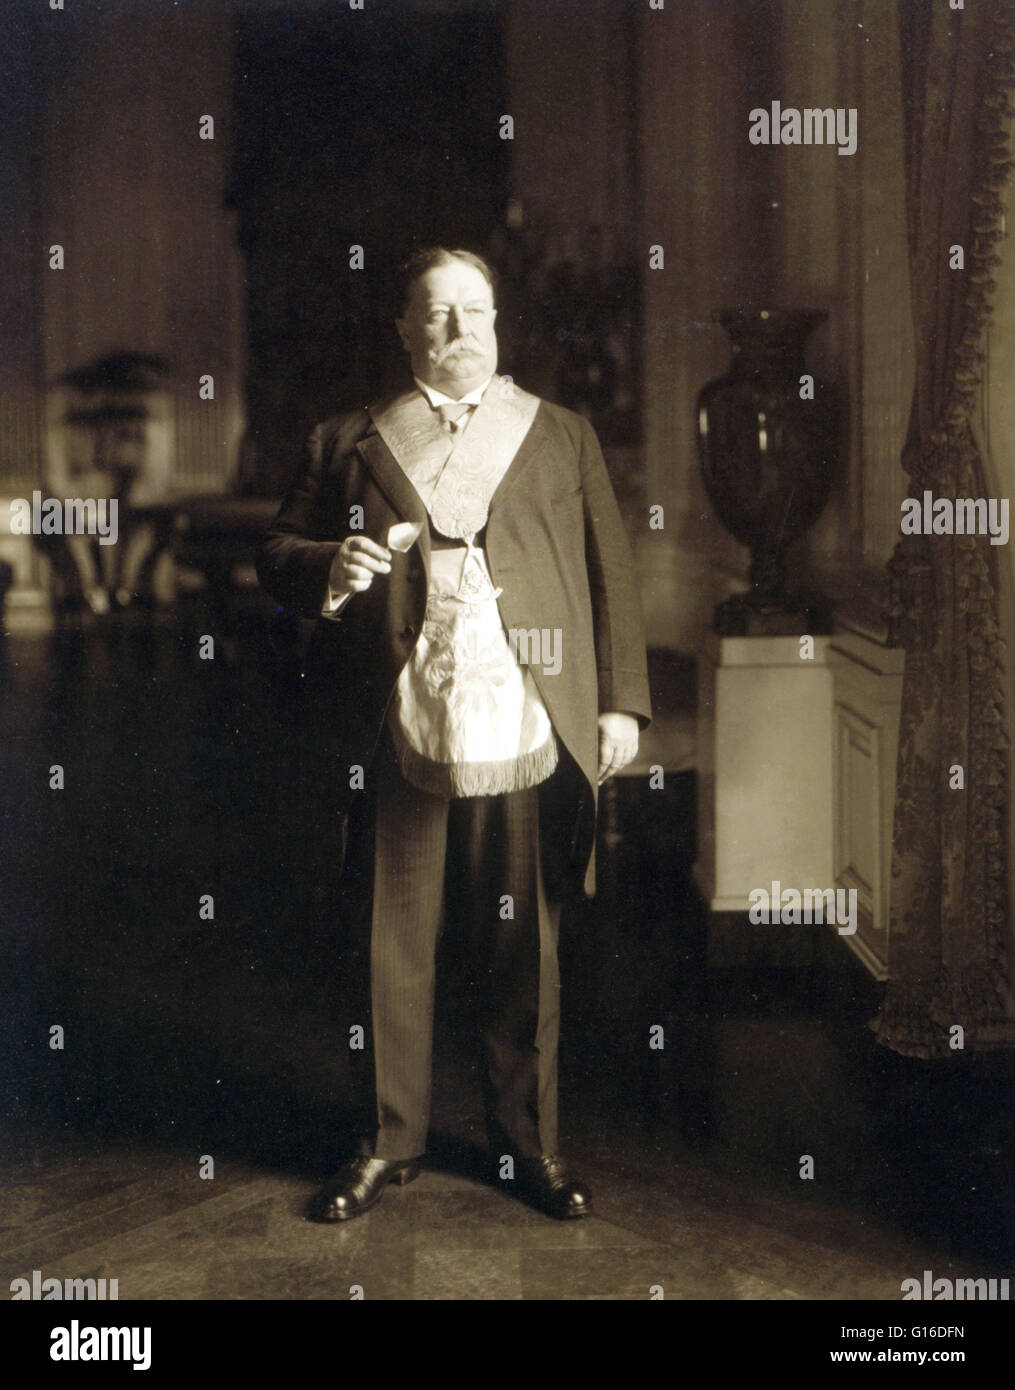 Taft in Freimaurer Regalia, 1911. Taft (15. September 1857 - 8. März 1930) war der 27. Präsident der Vereinigten Staaten (1909-1913) und später der zehnten Oberrichter der Vereinigten Staaten (1921-1930). Er ist die einzige Person in Bot gedient haben Stockfoto